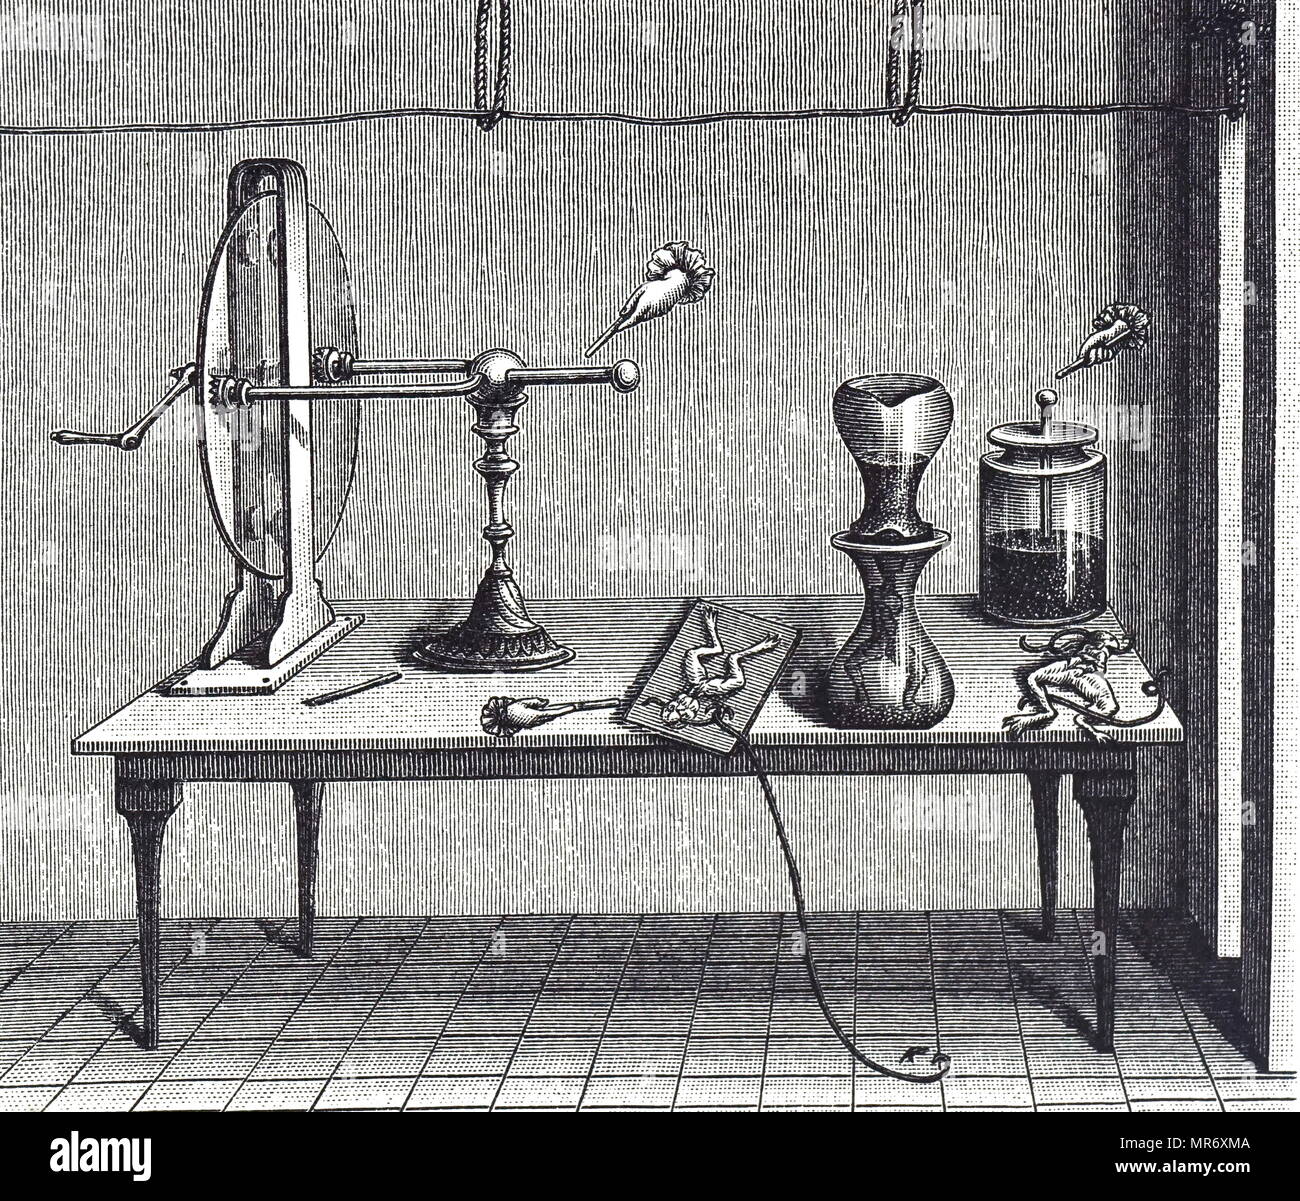 Grabado representando Luigi Galvani del experimento que investiga el comportamiento de los músculos estimulados por electricidad. Luigi Galvani (1737-1798), un médico italiano, el físico, el biólogo y filósofo. Fecha del siglo xviii Foto de stock